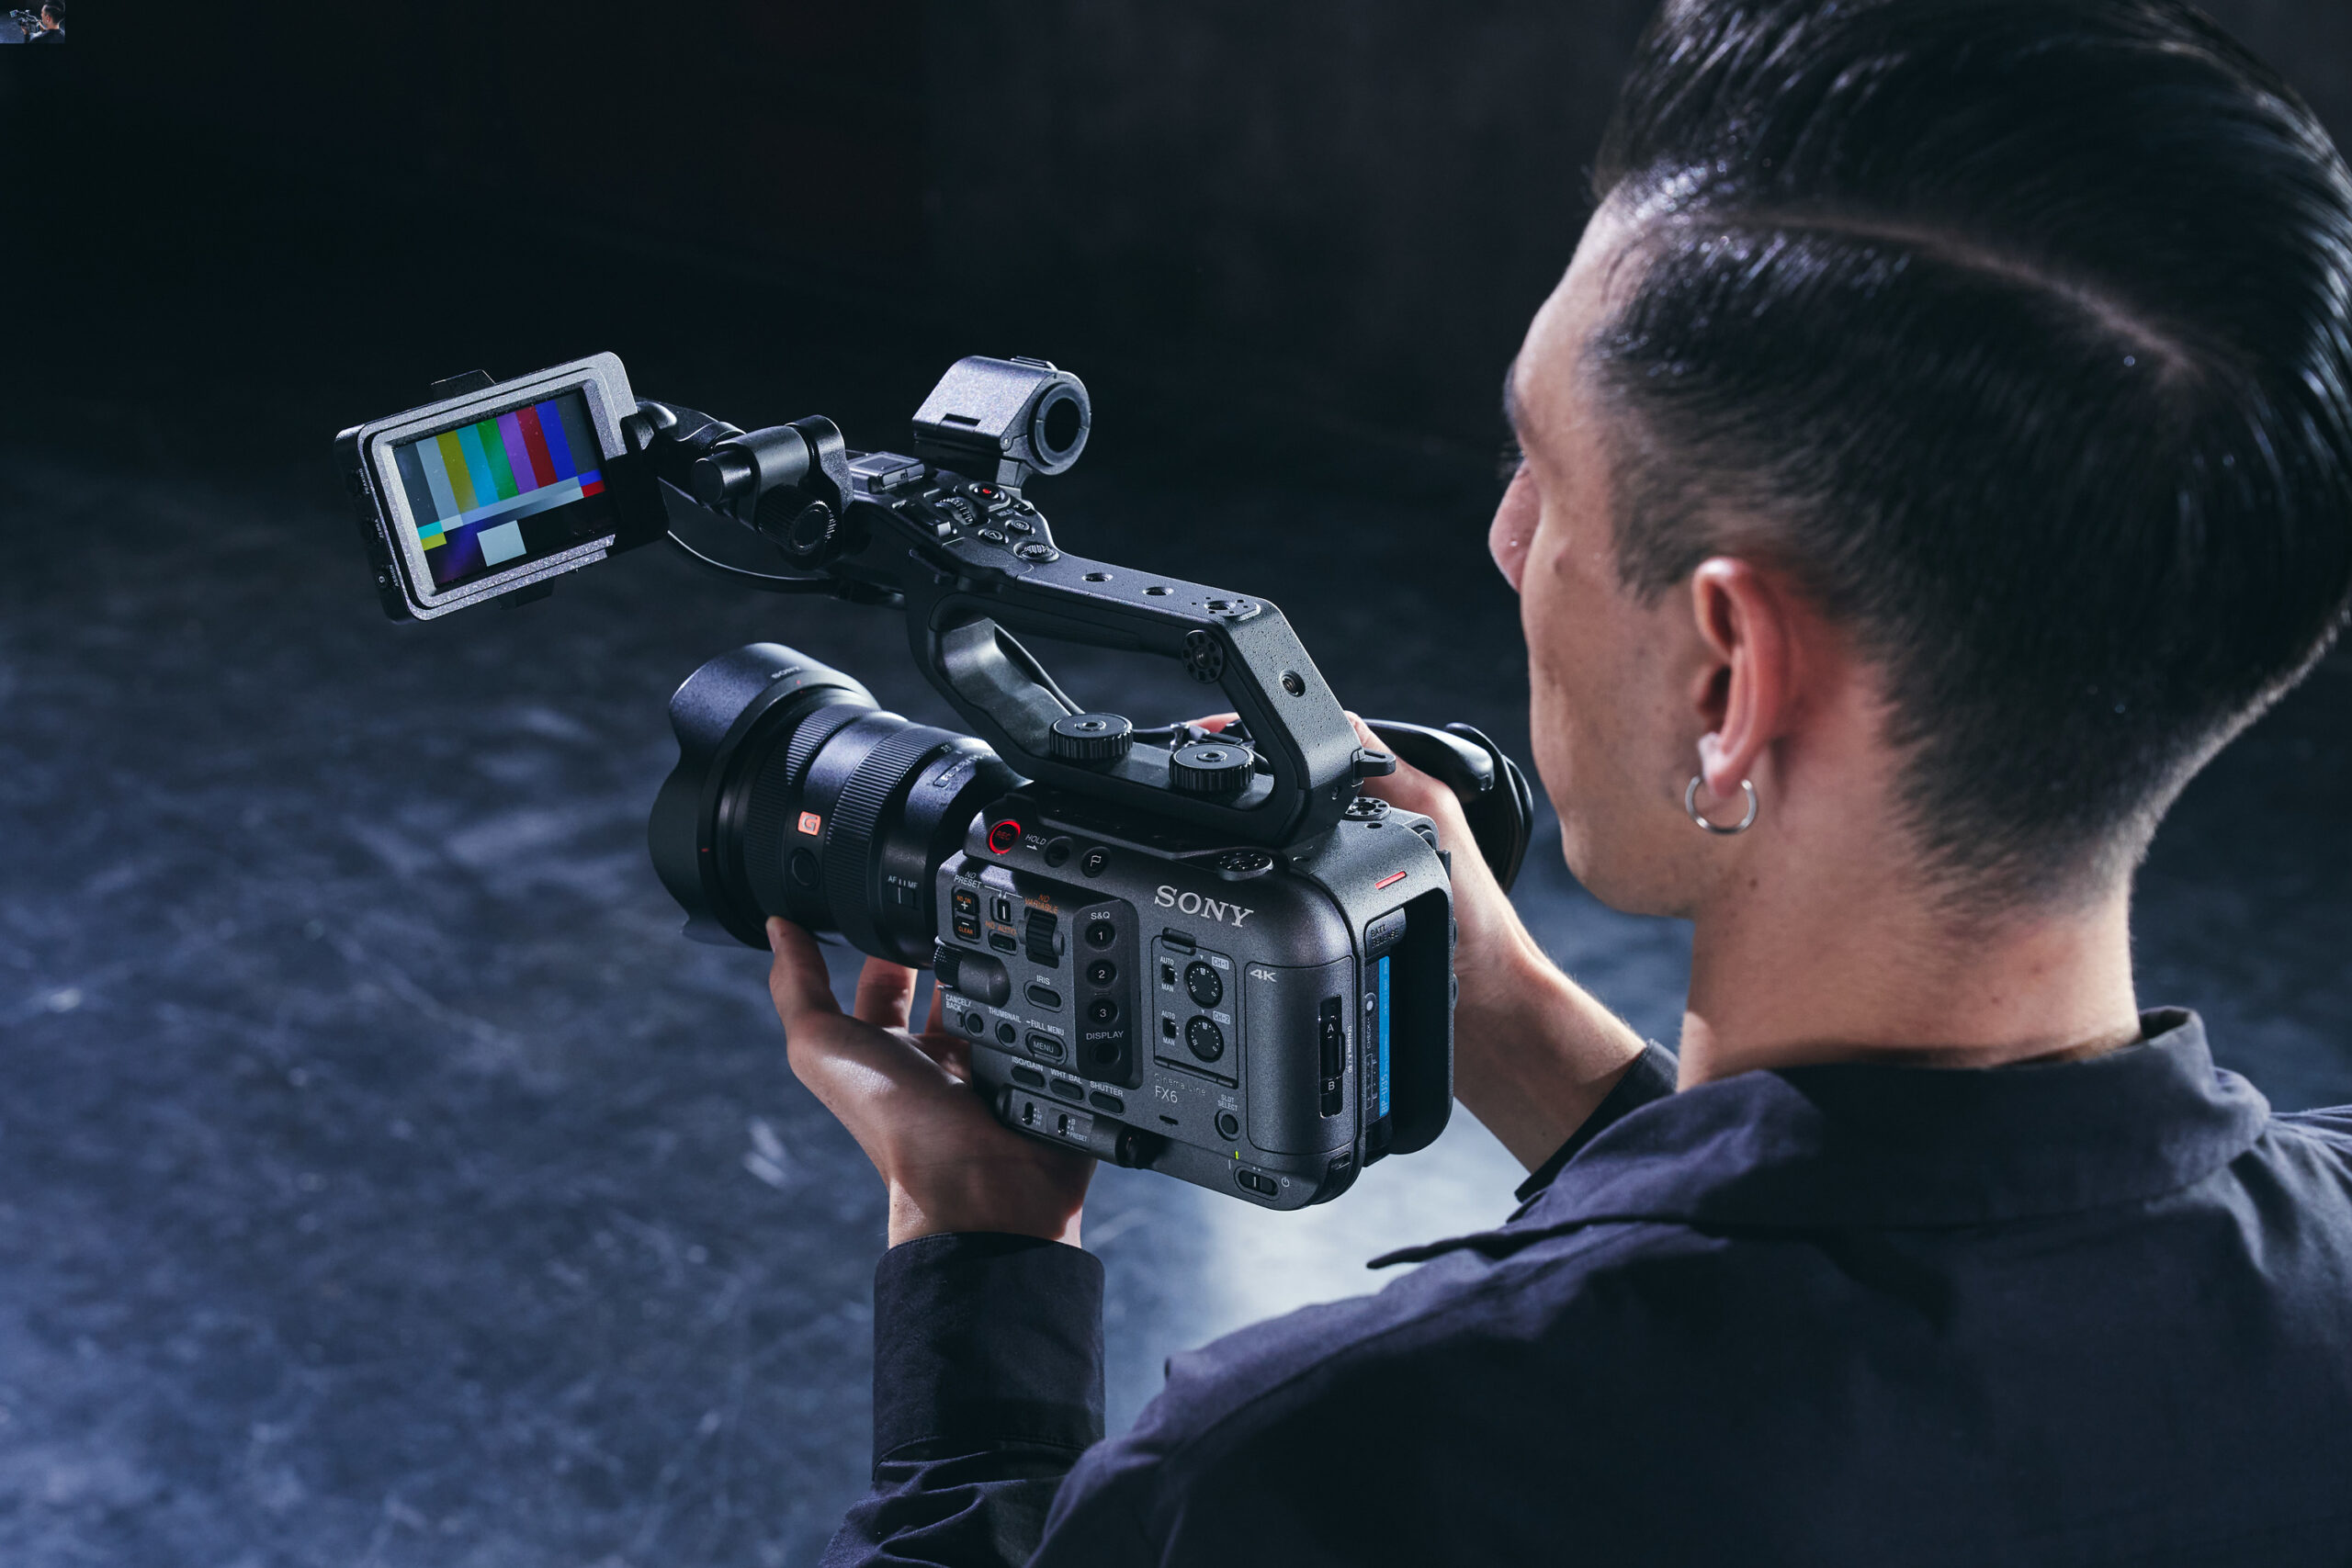 Sony Electronics anunció oficialmente el lanzamiento de la cámara FX6 (modelo ILME-FX6V), la última incorporación a la serie Cinema Line de Sony